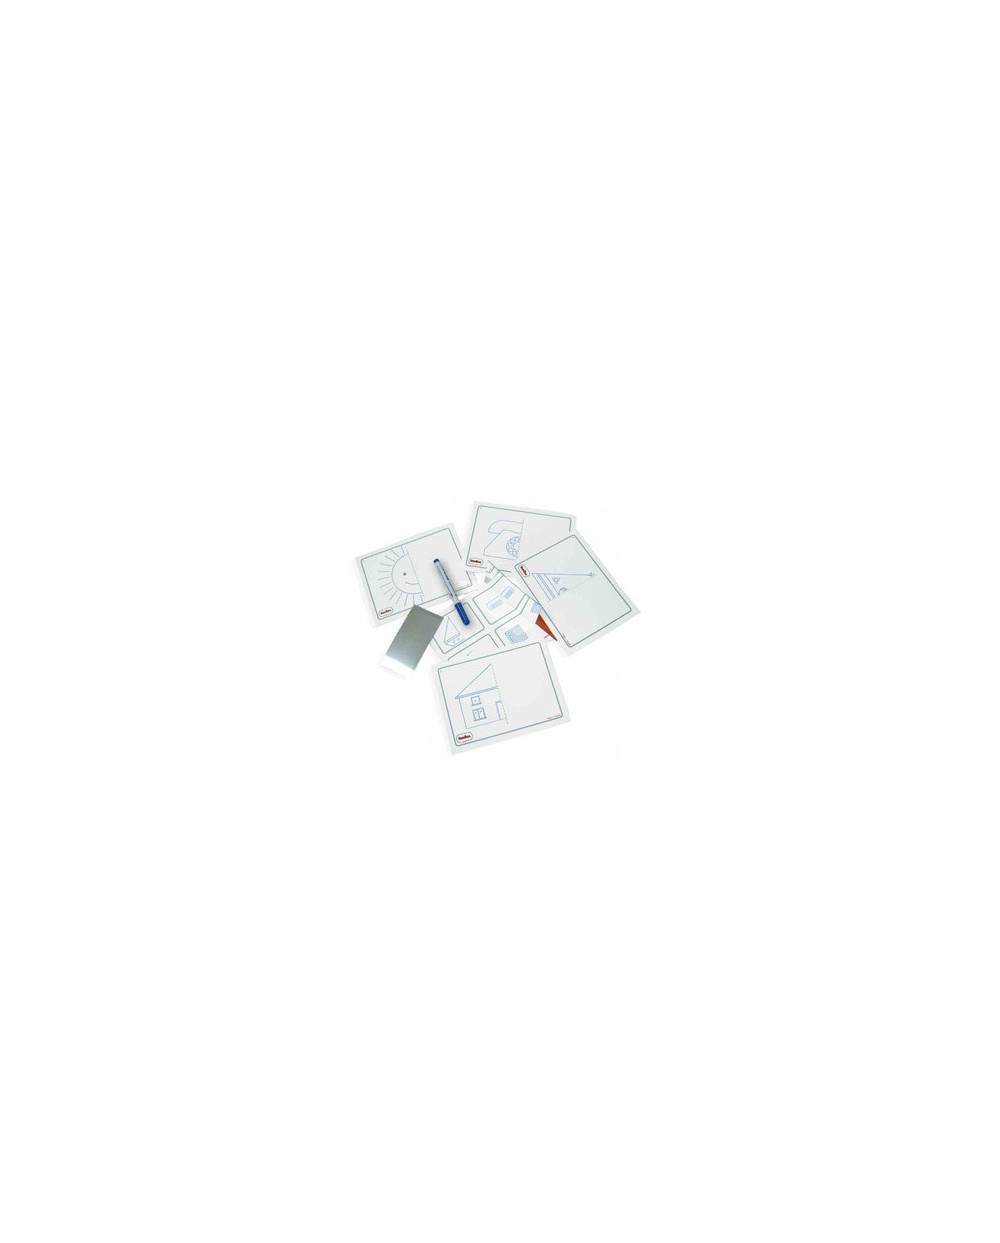 Juego tarjetas reutilizables henbea imagina y completa plastico flexible con ilustraciones 21x15 cm